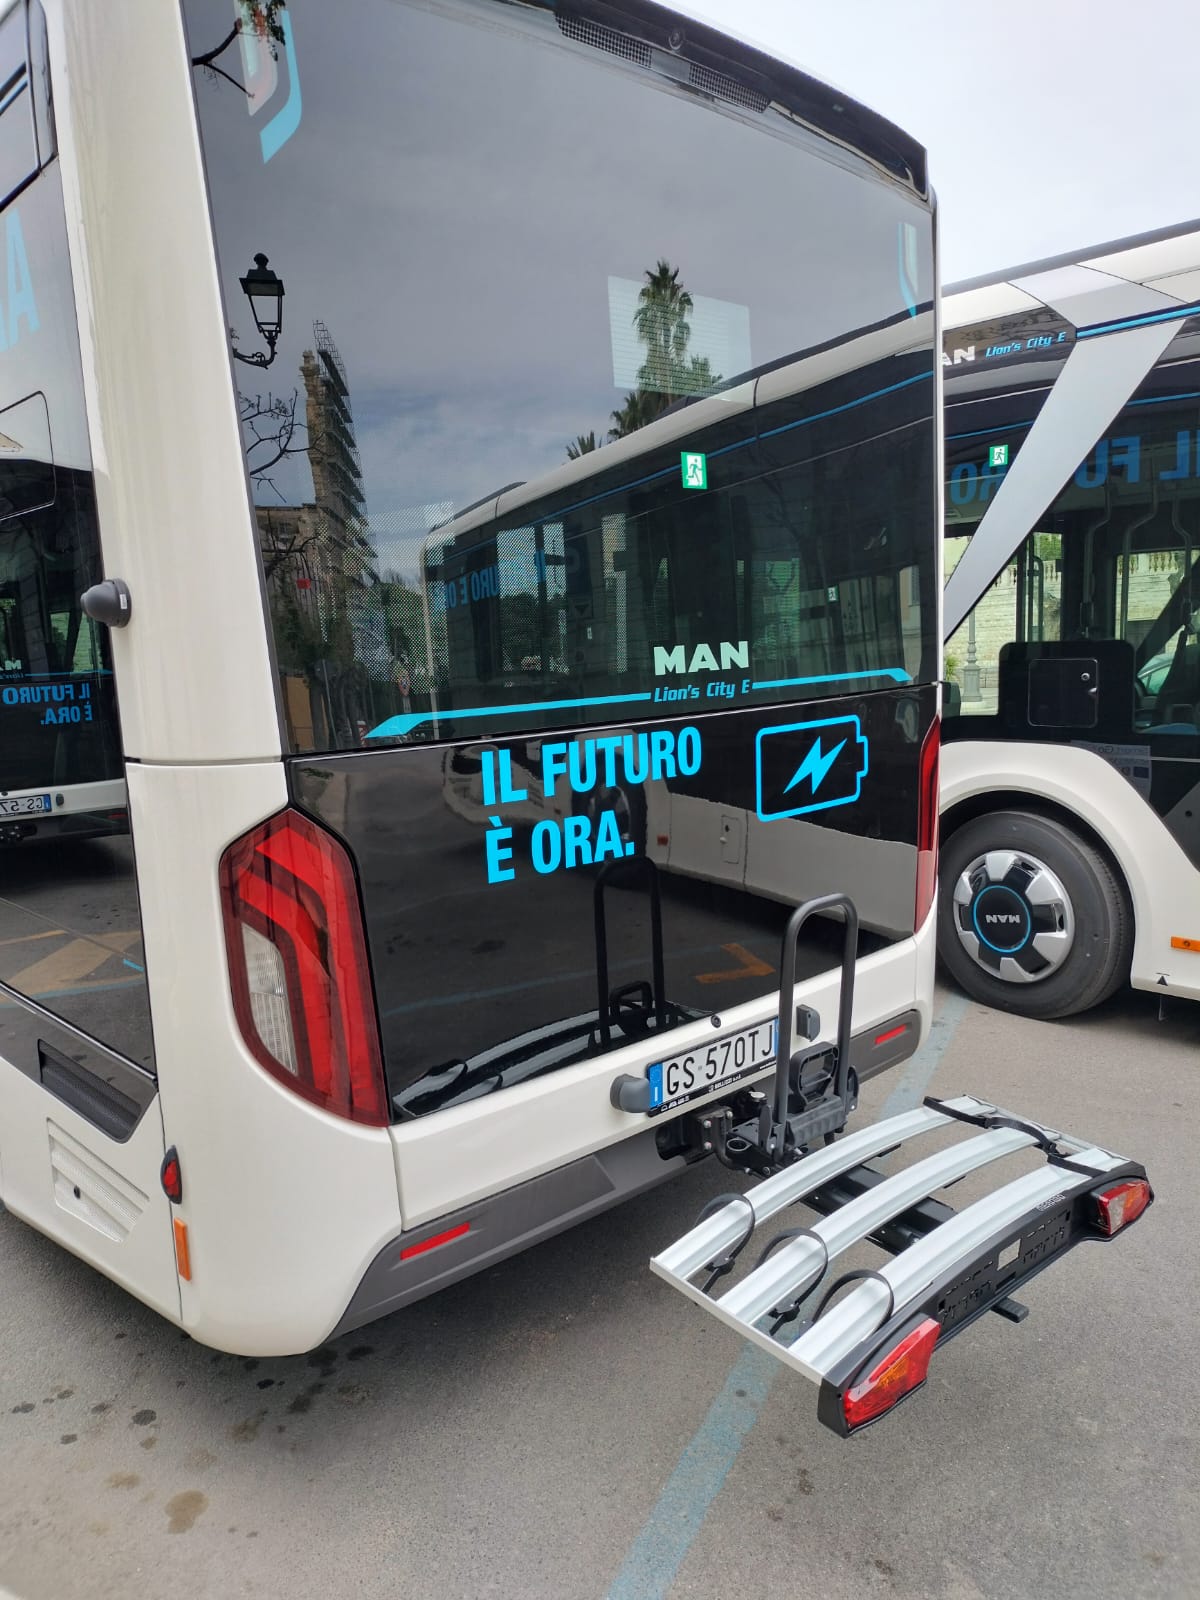 Galleria Trasporti, inaugurati gli 8 nuovi autobus a basse emissioni inquinanti dei Comuni di Fasano e Trani finanziati dalla Regione con Smart go city - Diapositiva 1 di 4